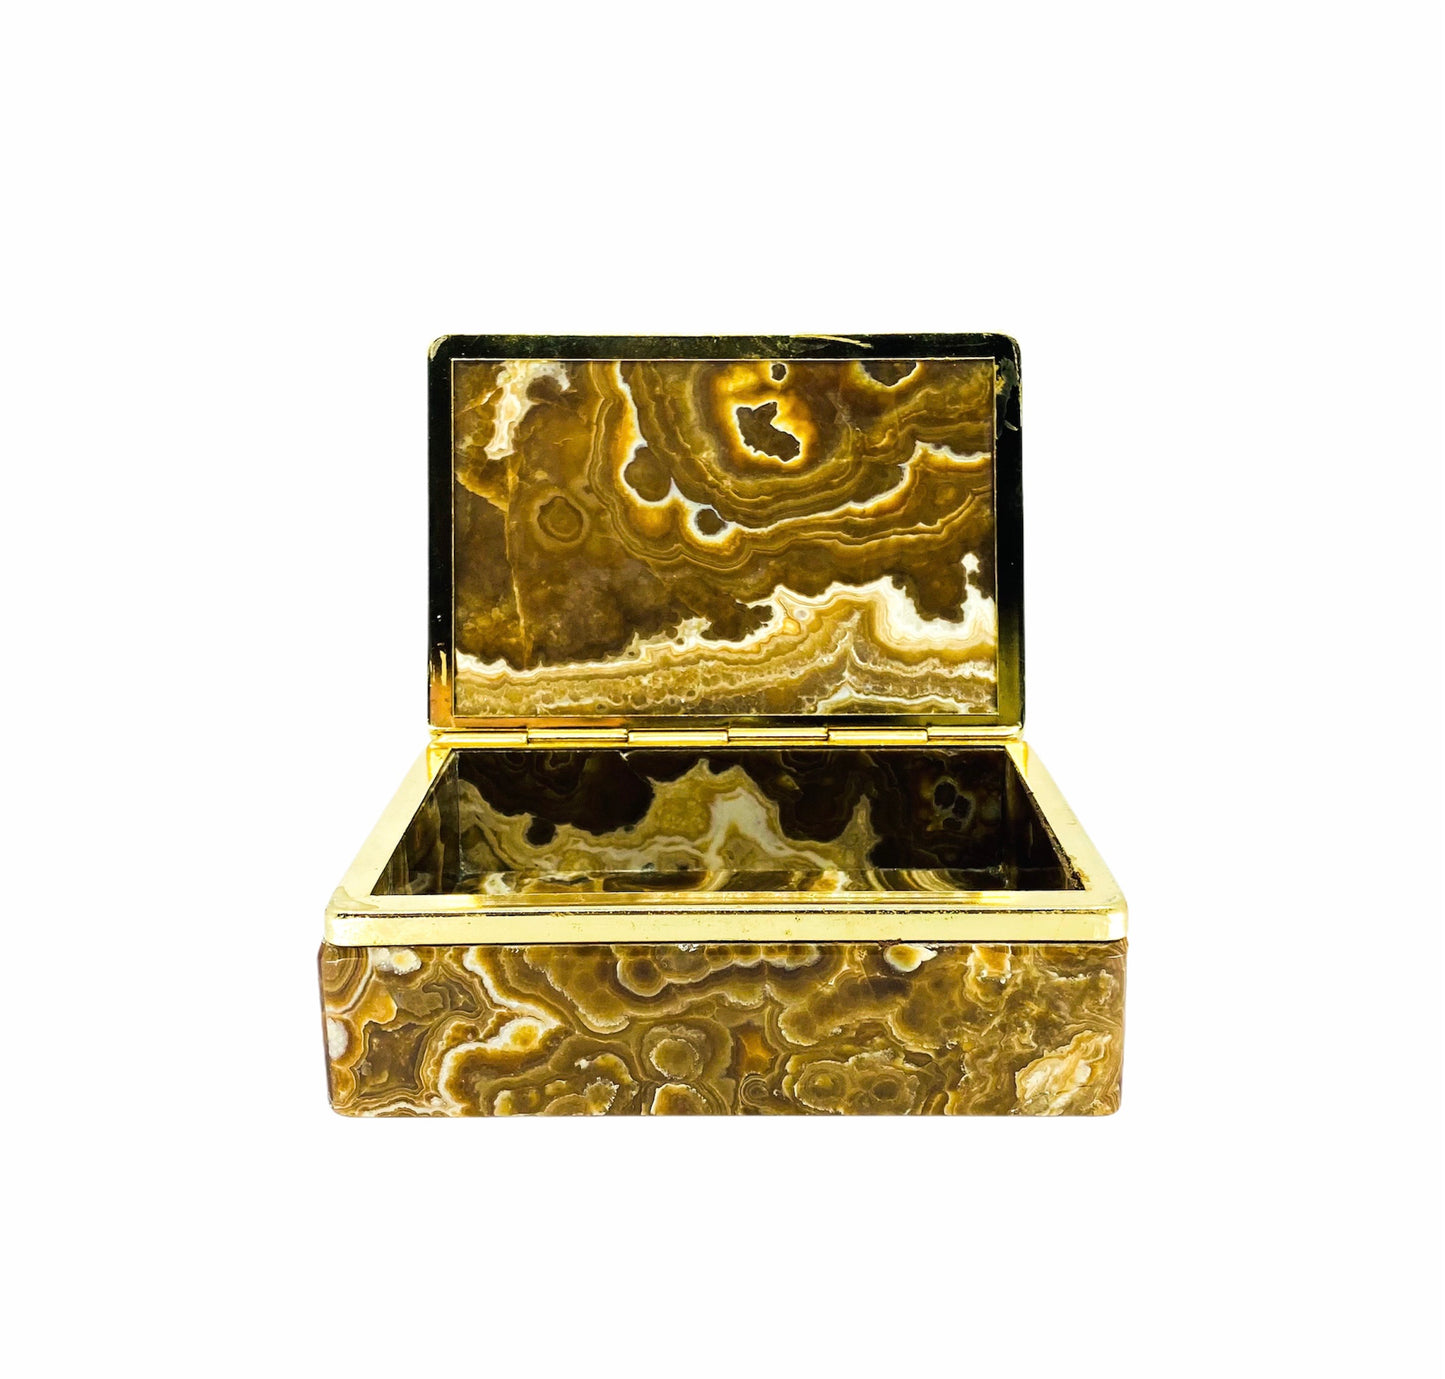 Stone Marble Keepsake Box with Brass Trim